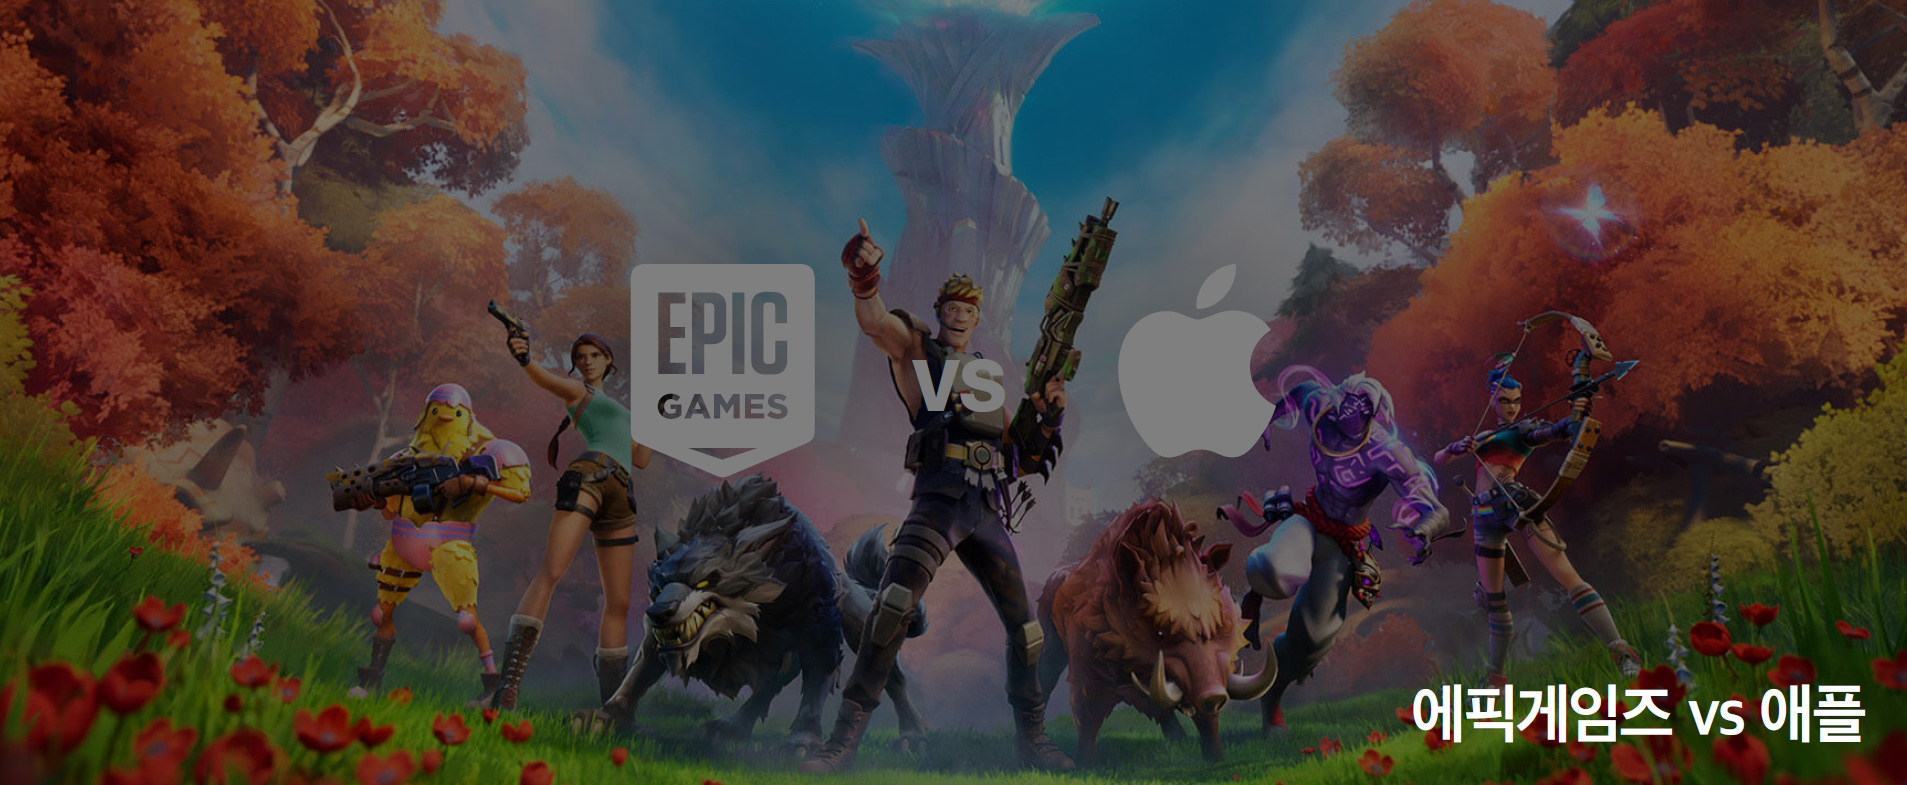 에픽게임즈 vs 애플